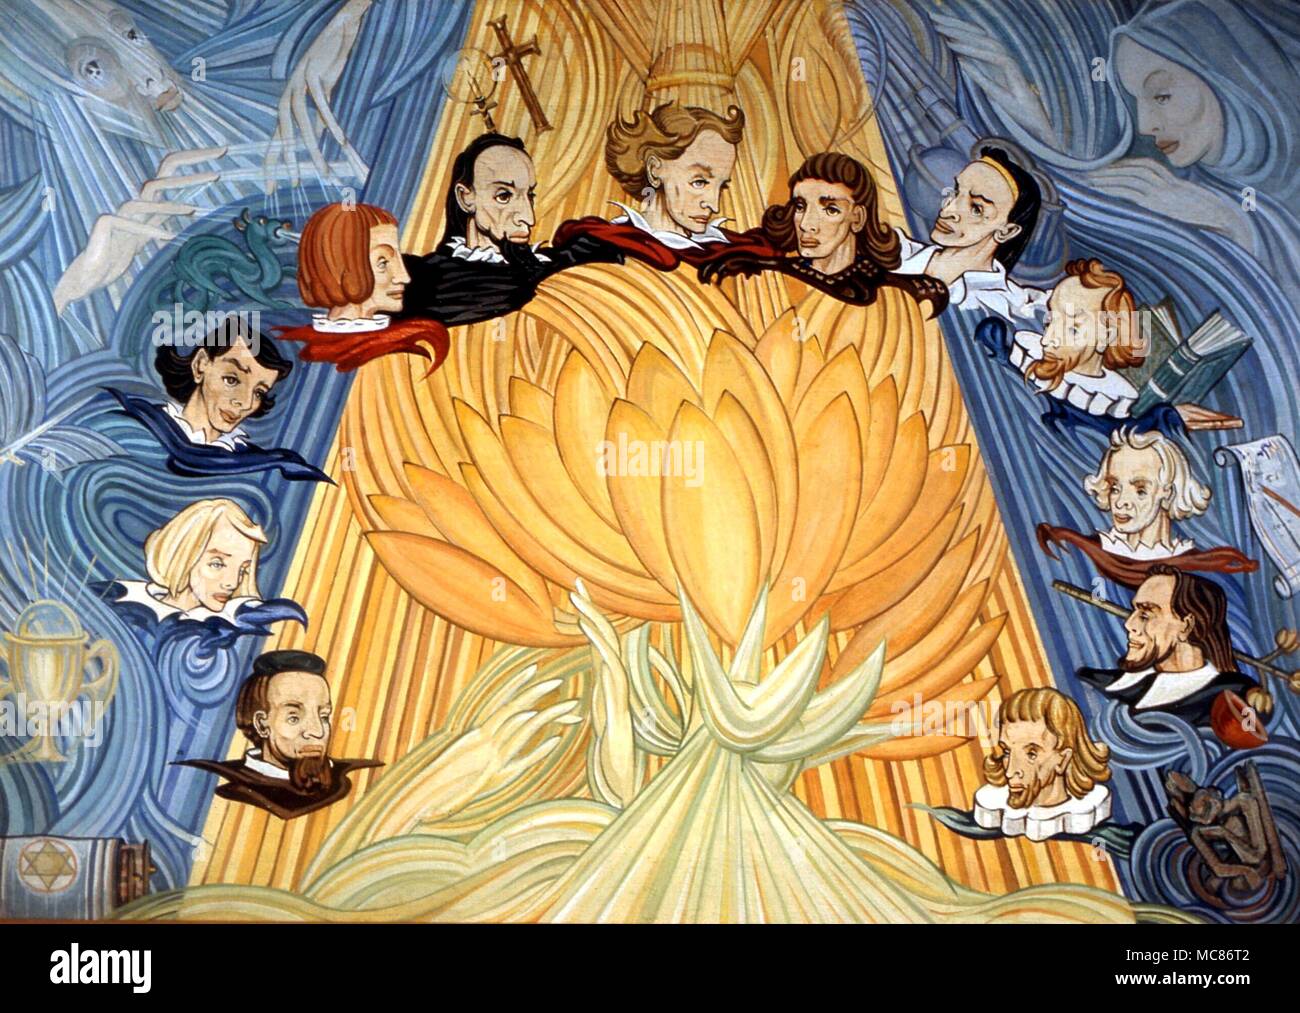 Reinkarnation Gemälde von Fay Pomerance in Bezug auf das Thema der 12 Einzelpersonen, die ihre früheren Inkarnationen zu einer Versammlung im Italien der späten Renaissance verfolgen könnte. Gemälde "Der Unternehmen der Zwölf", in einer privaten Sammlung Stockfoto